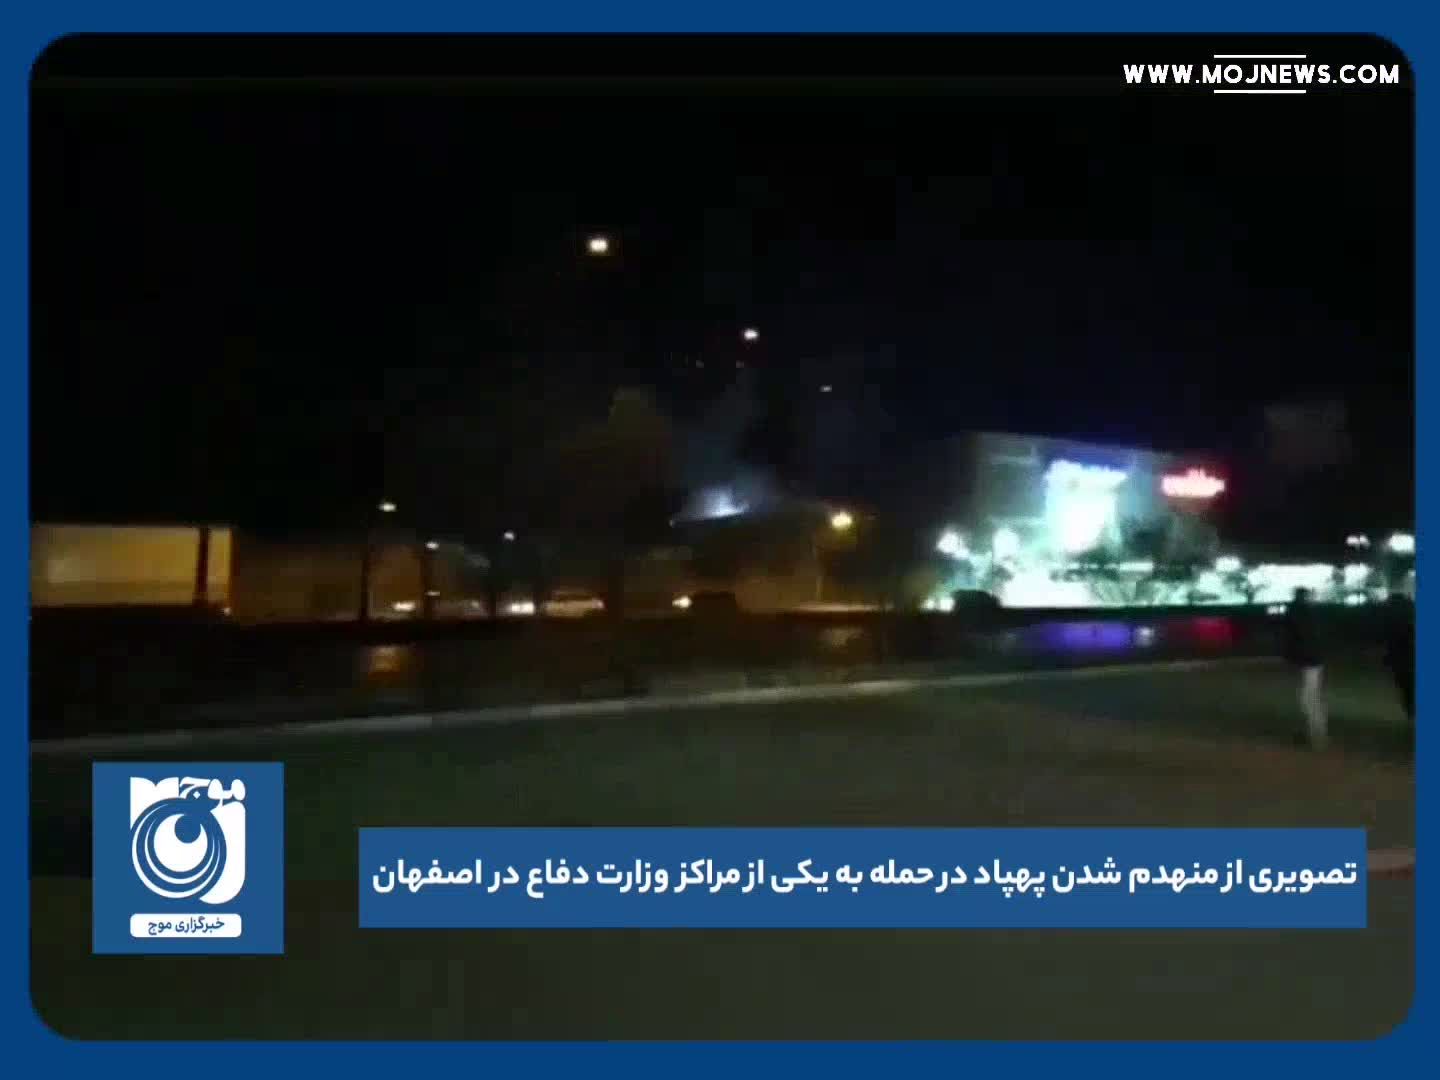 تصویری از منهدم شدن پهپاد در حمله به یکی از مراکز وزارت دفاع در اصفهان